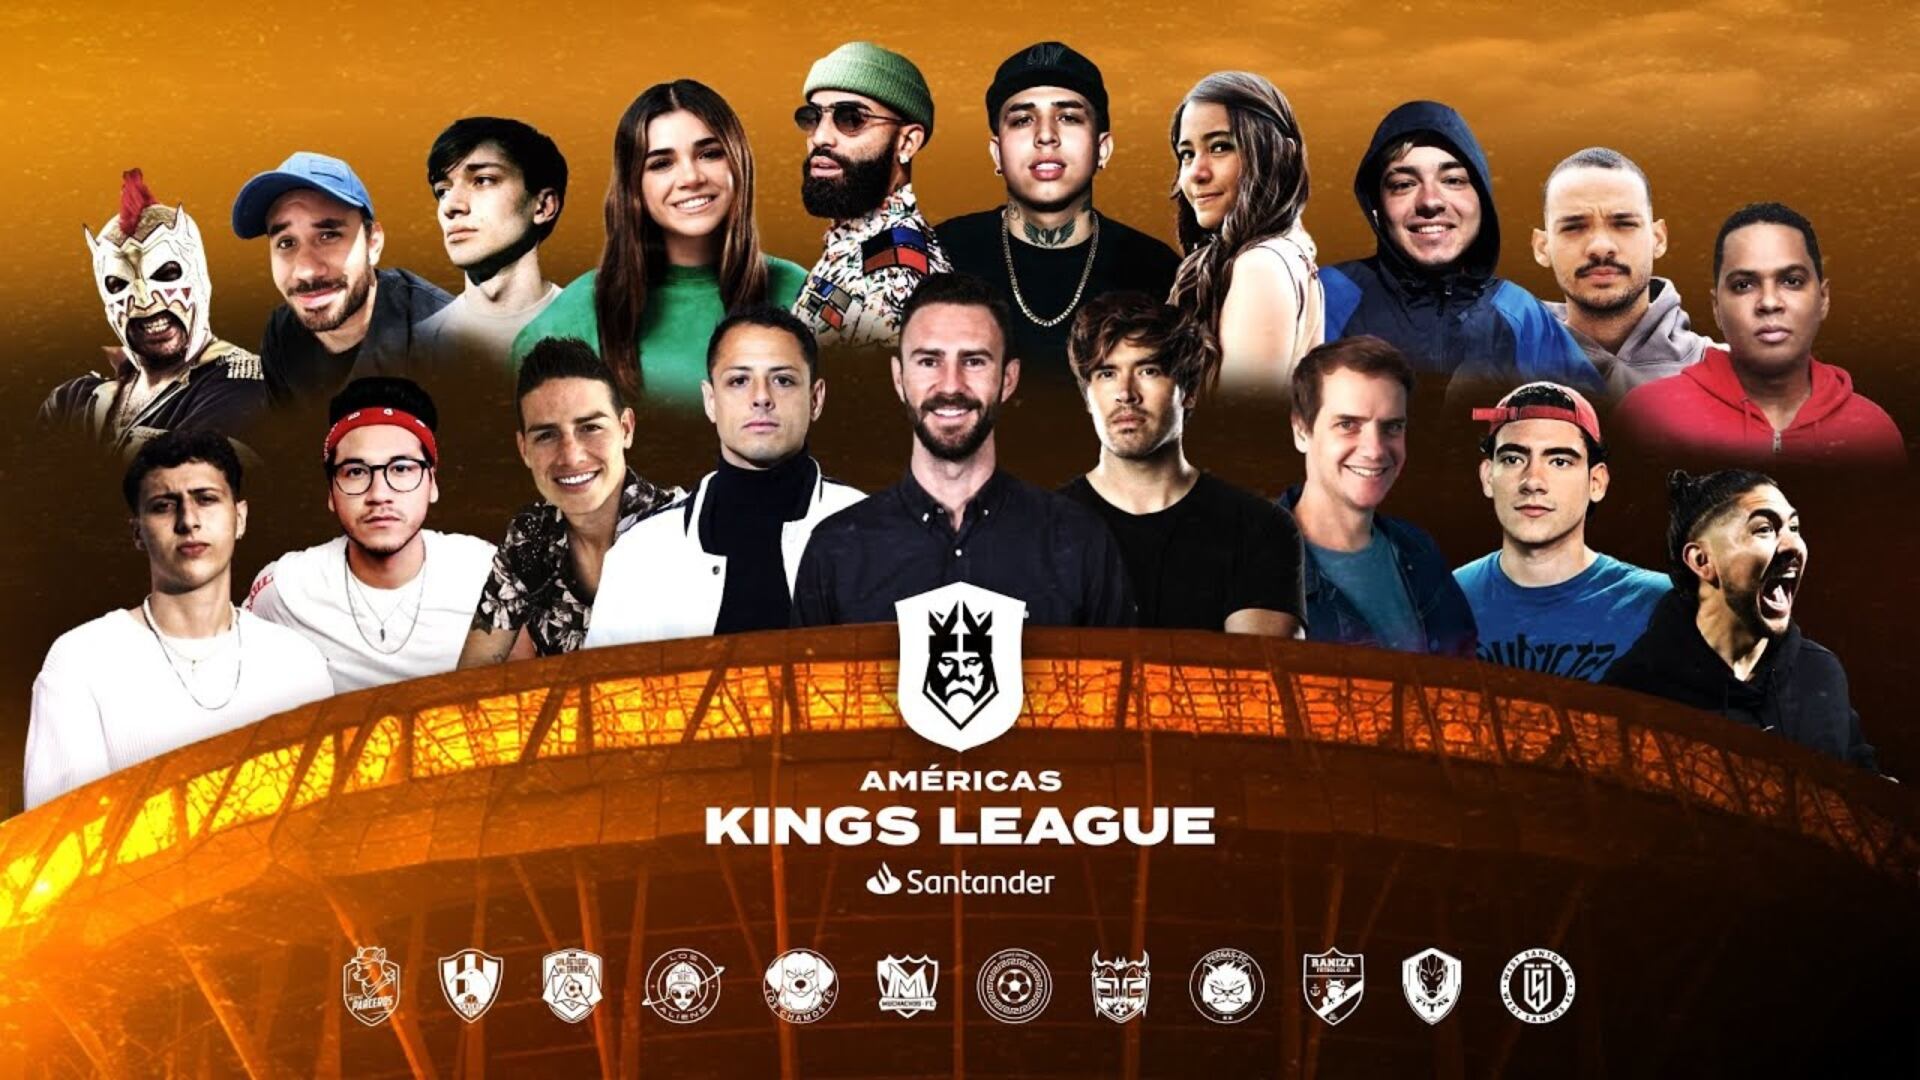 Kings League Américas, resultados de los Cuartos de Final del campeonato